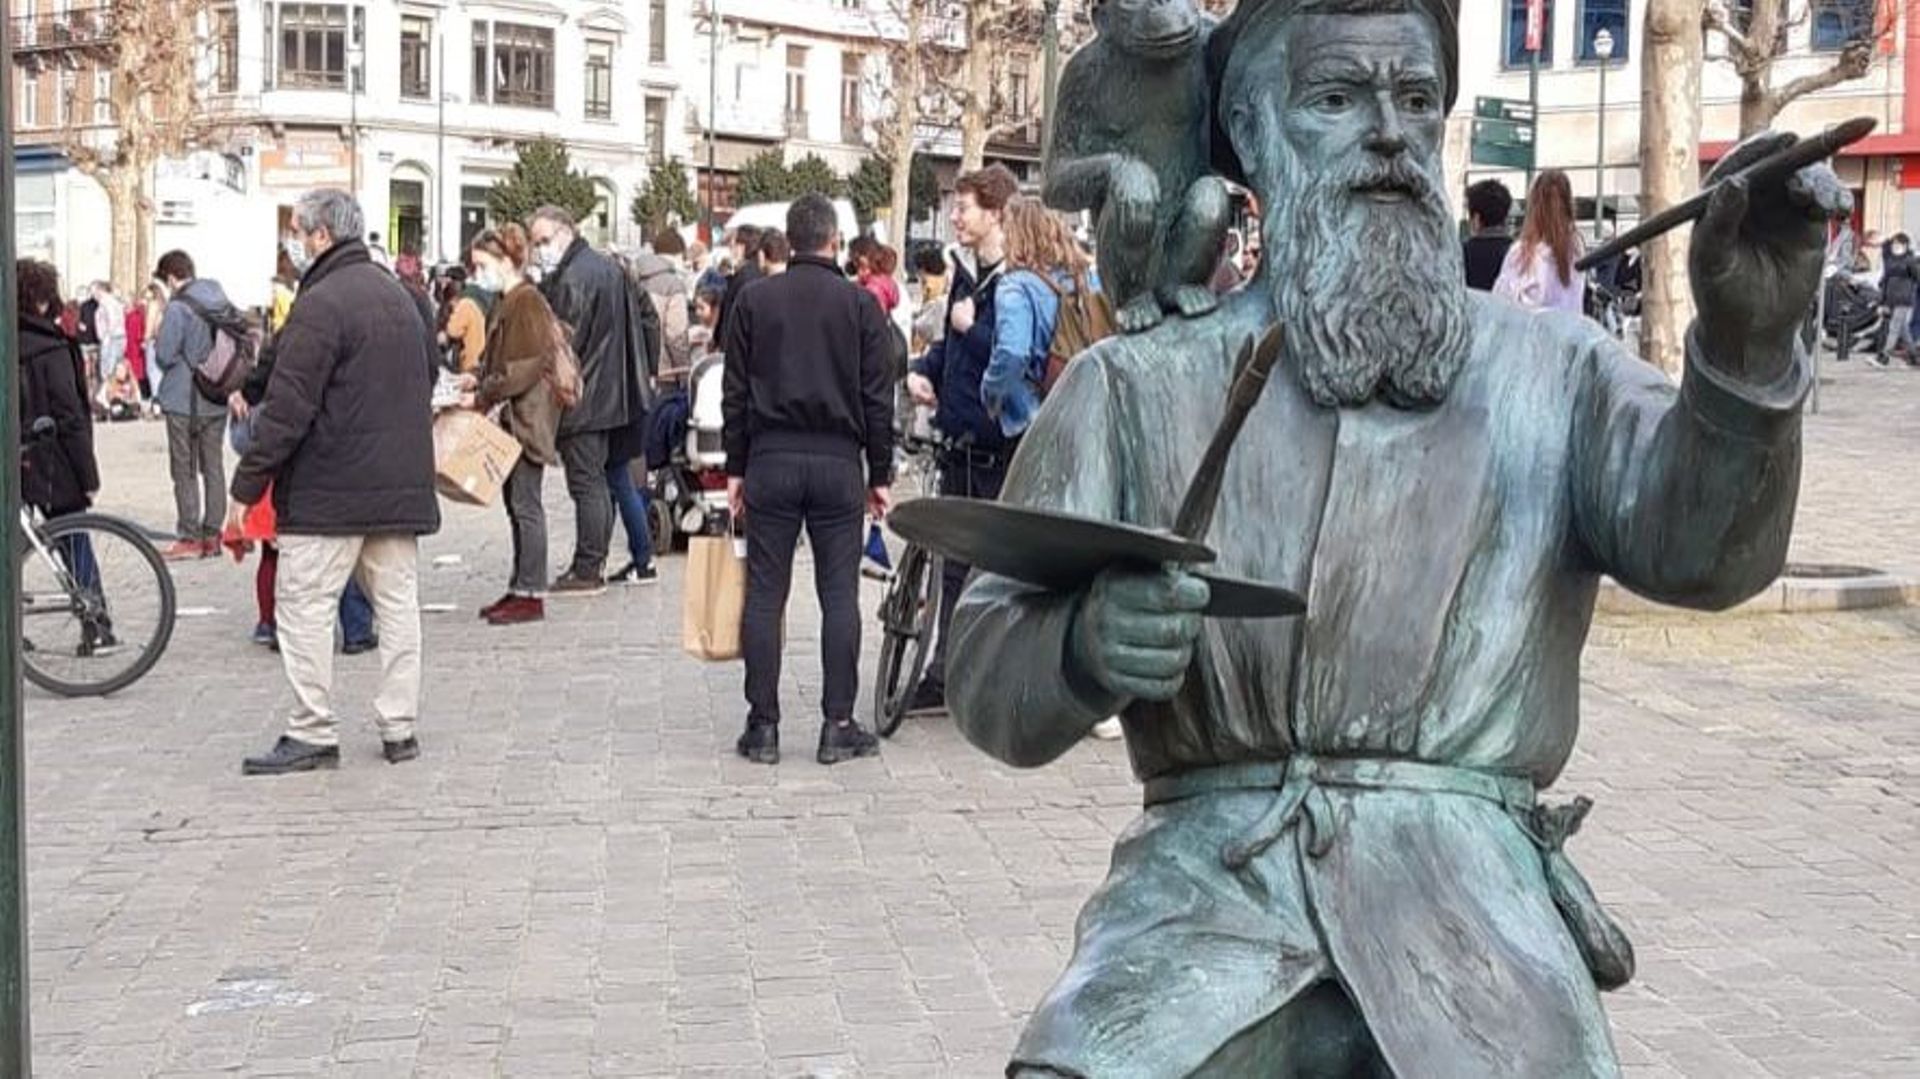 L'une des actions à Bruxelles a eu lieu au Sablon où une célèbre statue semble, elle aussi, avoir participé au mouvement